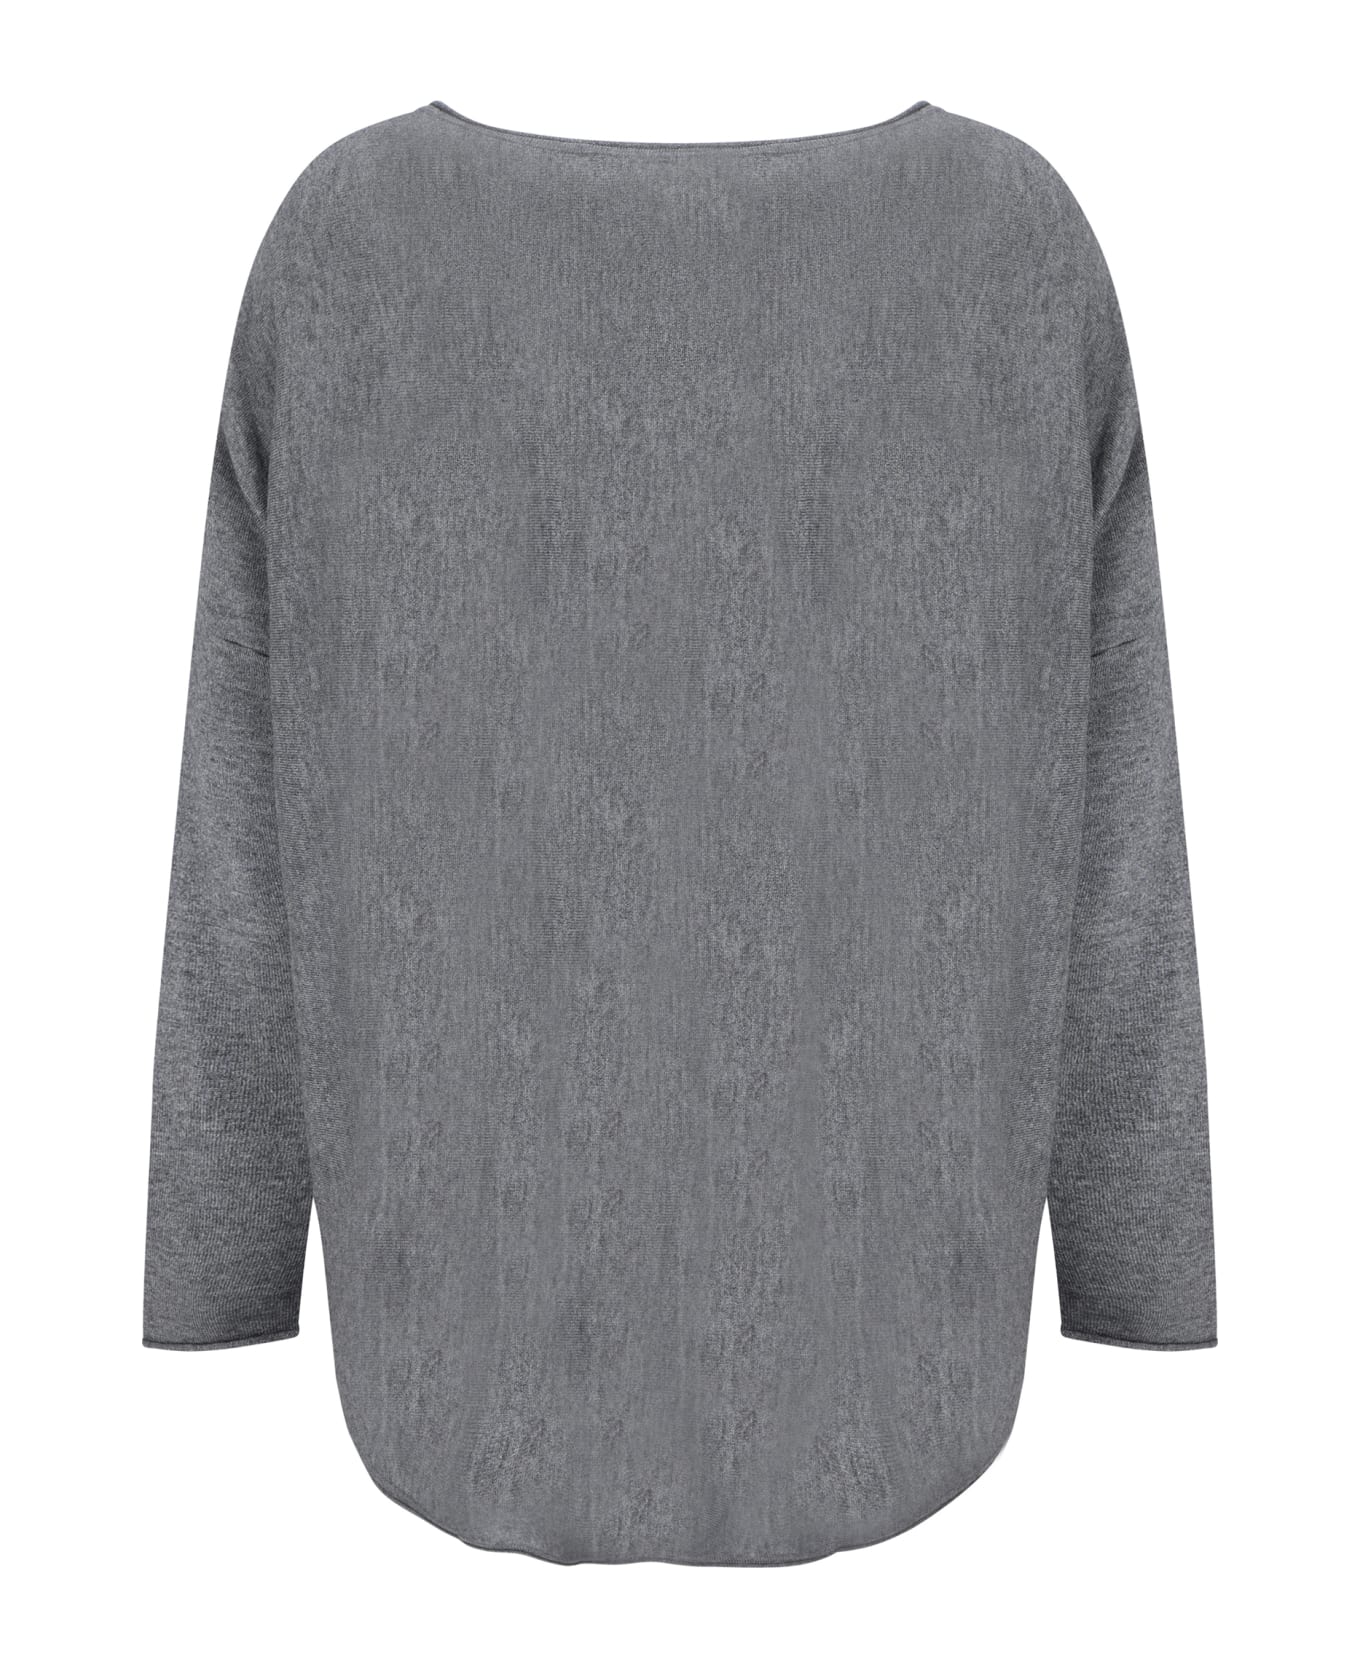 Wild Cashmere Sweater - Grey Melange